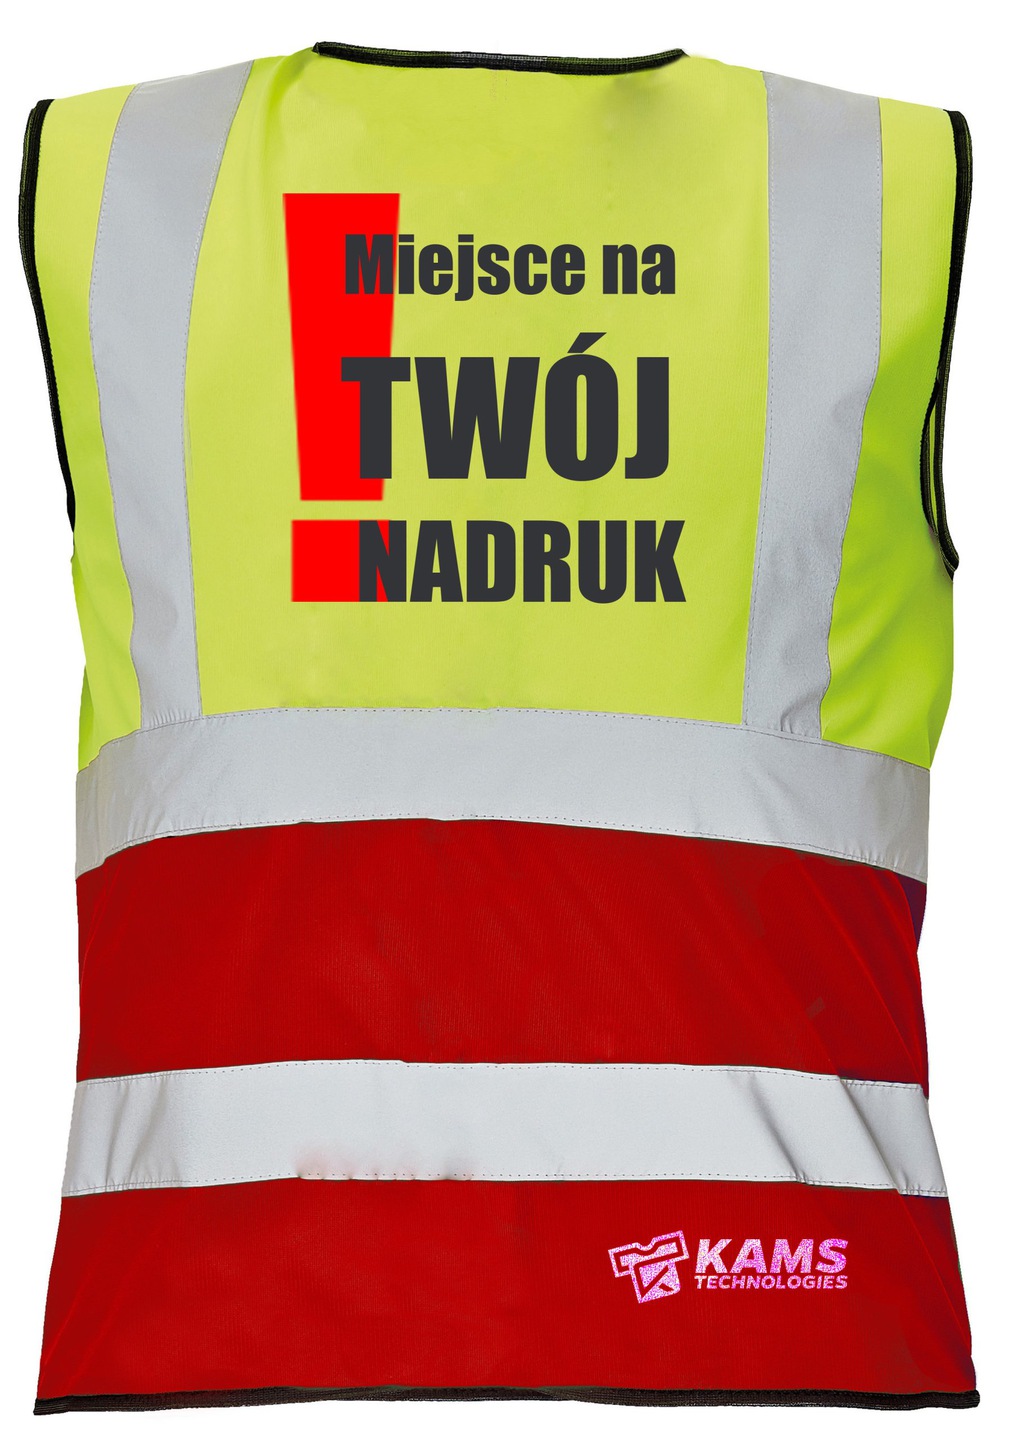 Kamizelka ostrzegawcza dwukolorowa z TWOIM NADRUKIEM, żółto/czerwona